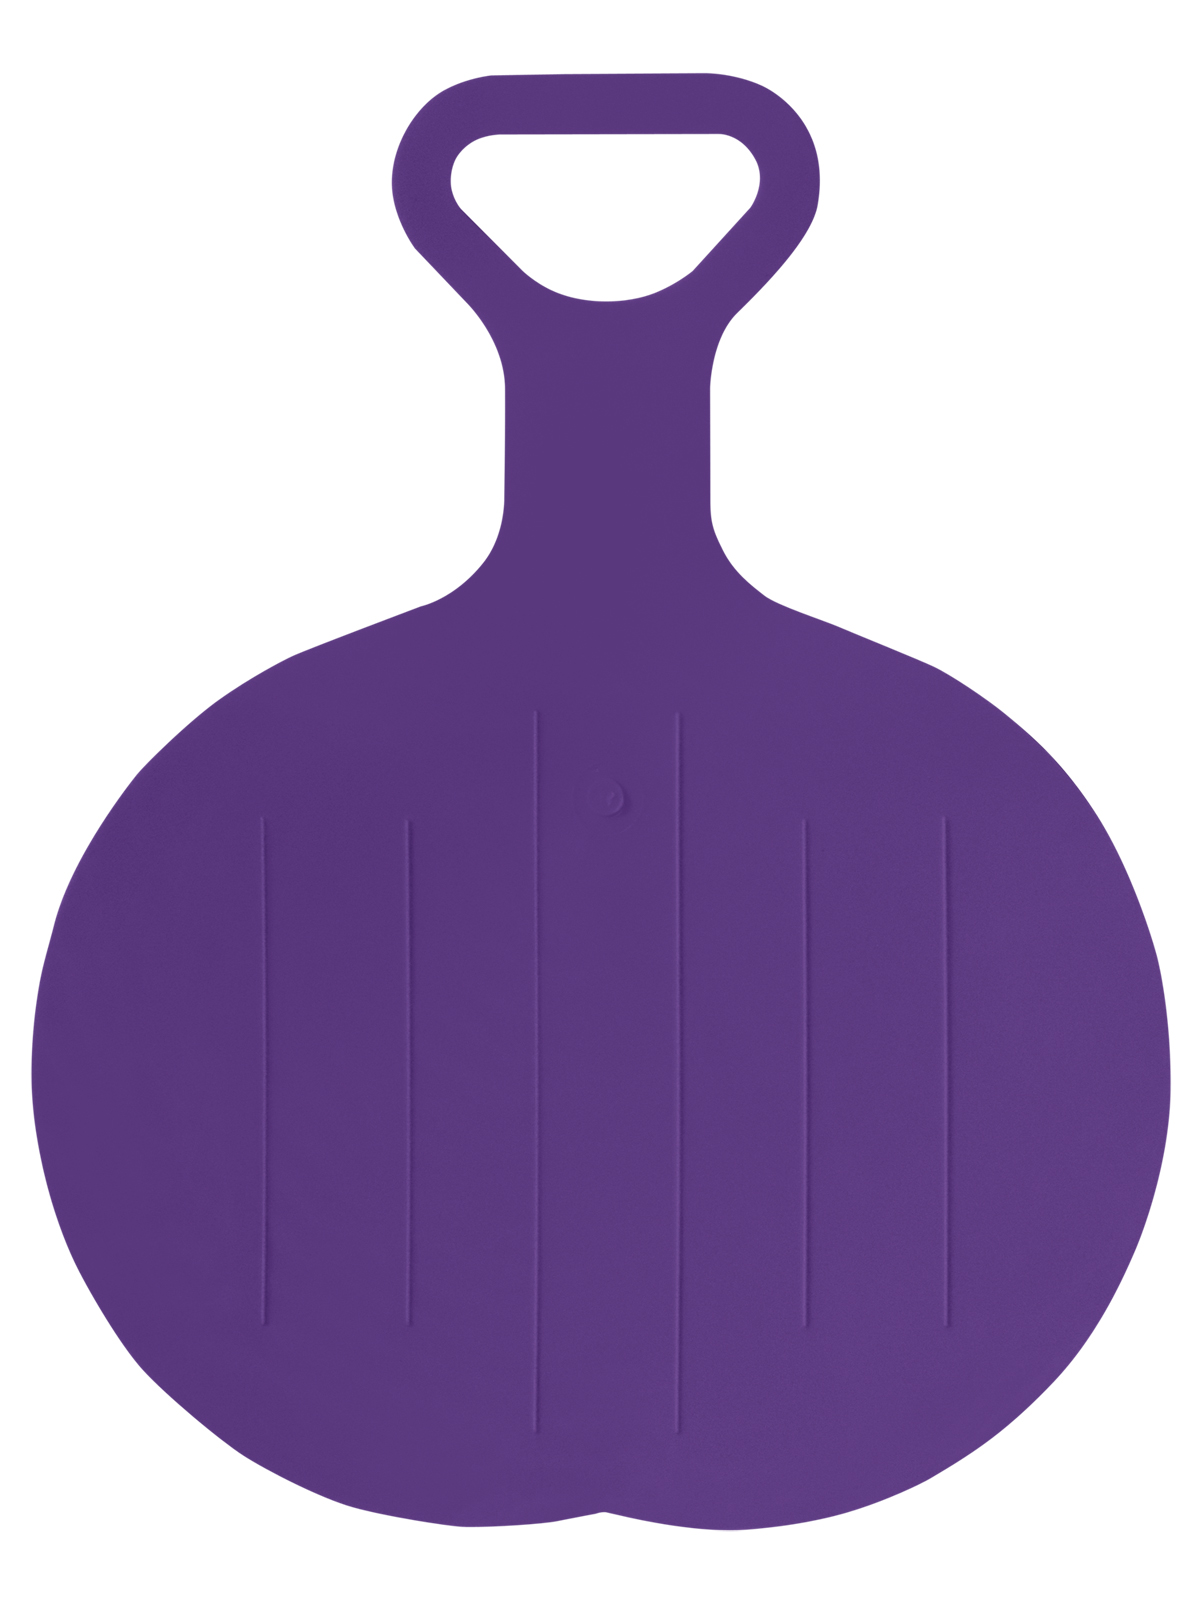 Ледянка Задира-Ленд круглая фиолетовая ЛКФ салфетка круглая 32 см 12шт уп фиолетовый